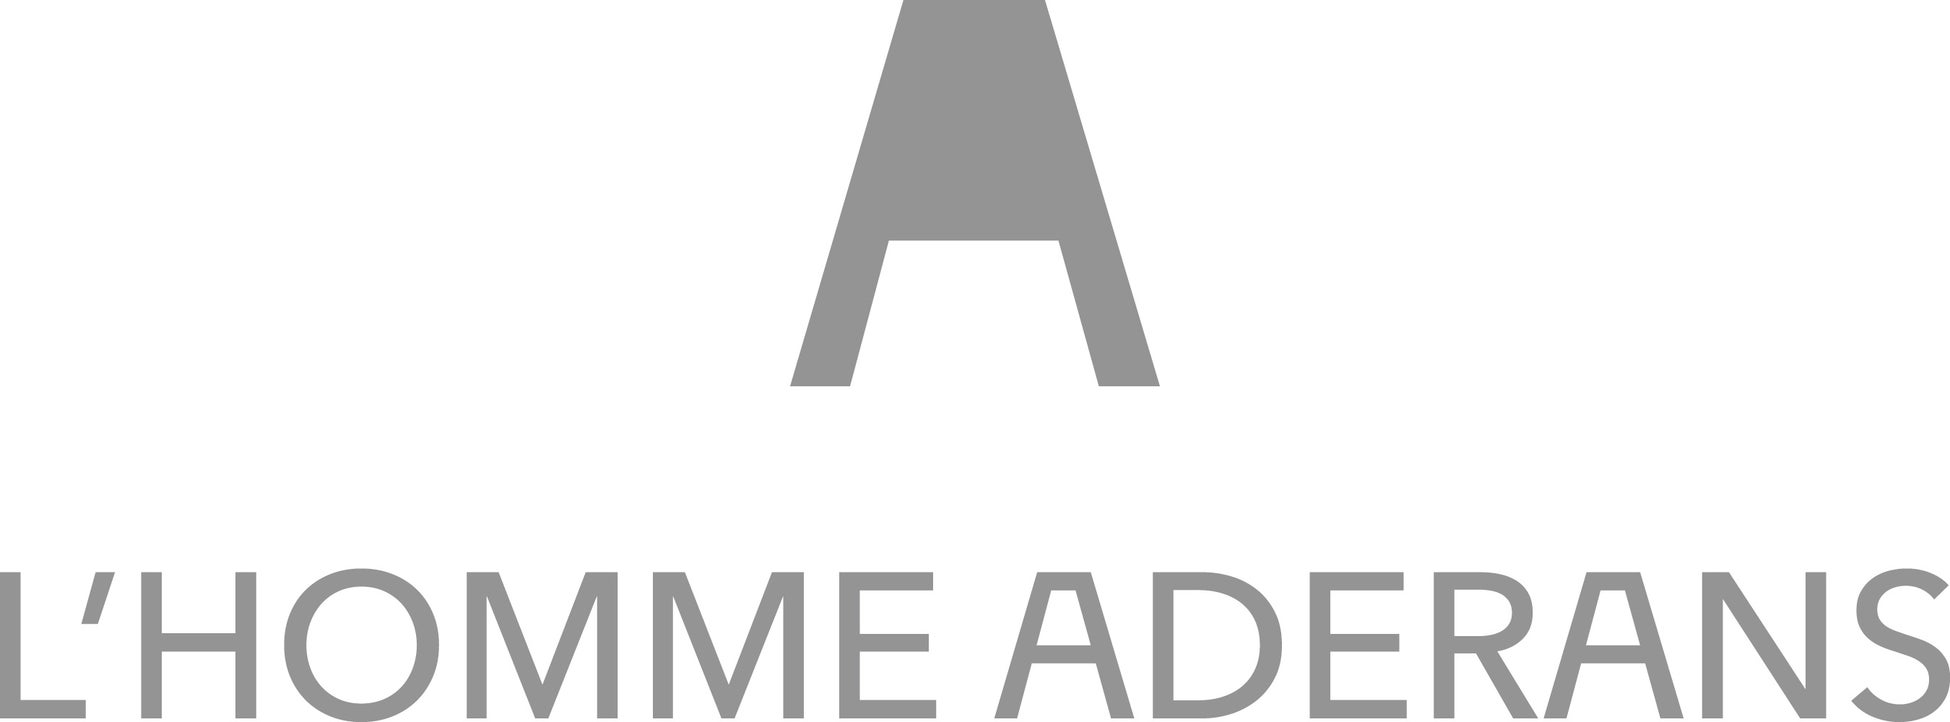 〈アデランス史上、最高級ヘア&スカルプケアブランドが誕生〉 ハイグレードとサステナブルが共存 『L’HOMME ADERANS』のサブ画像13